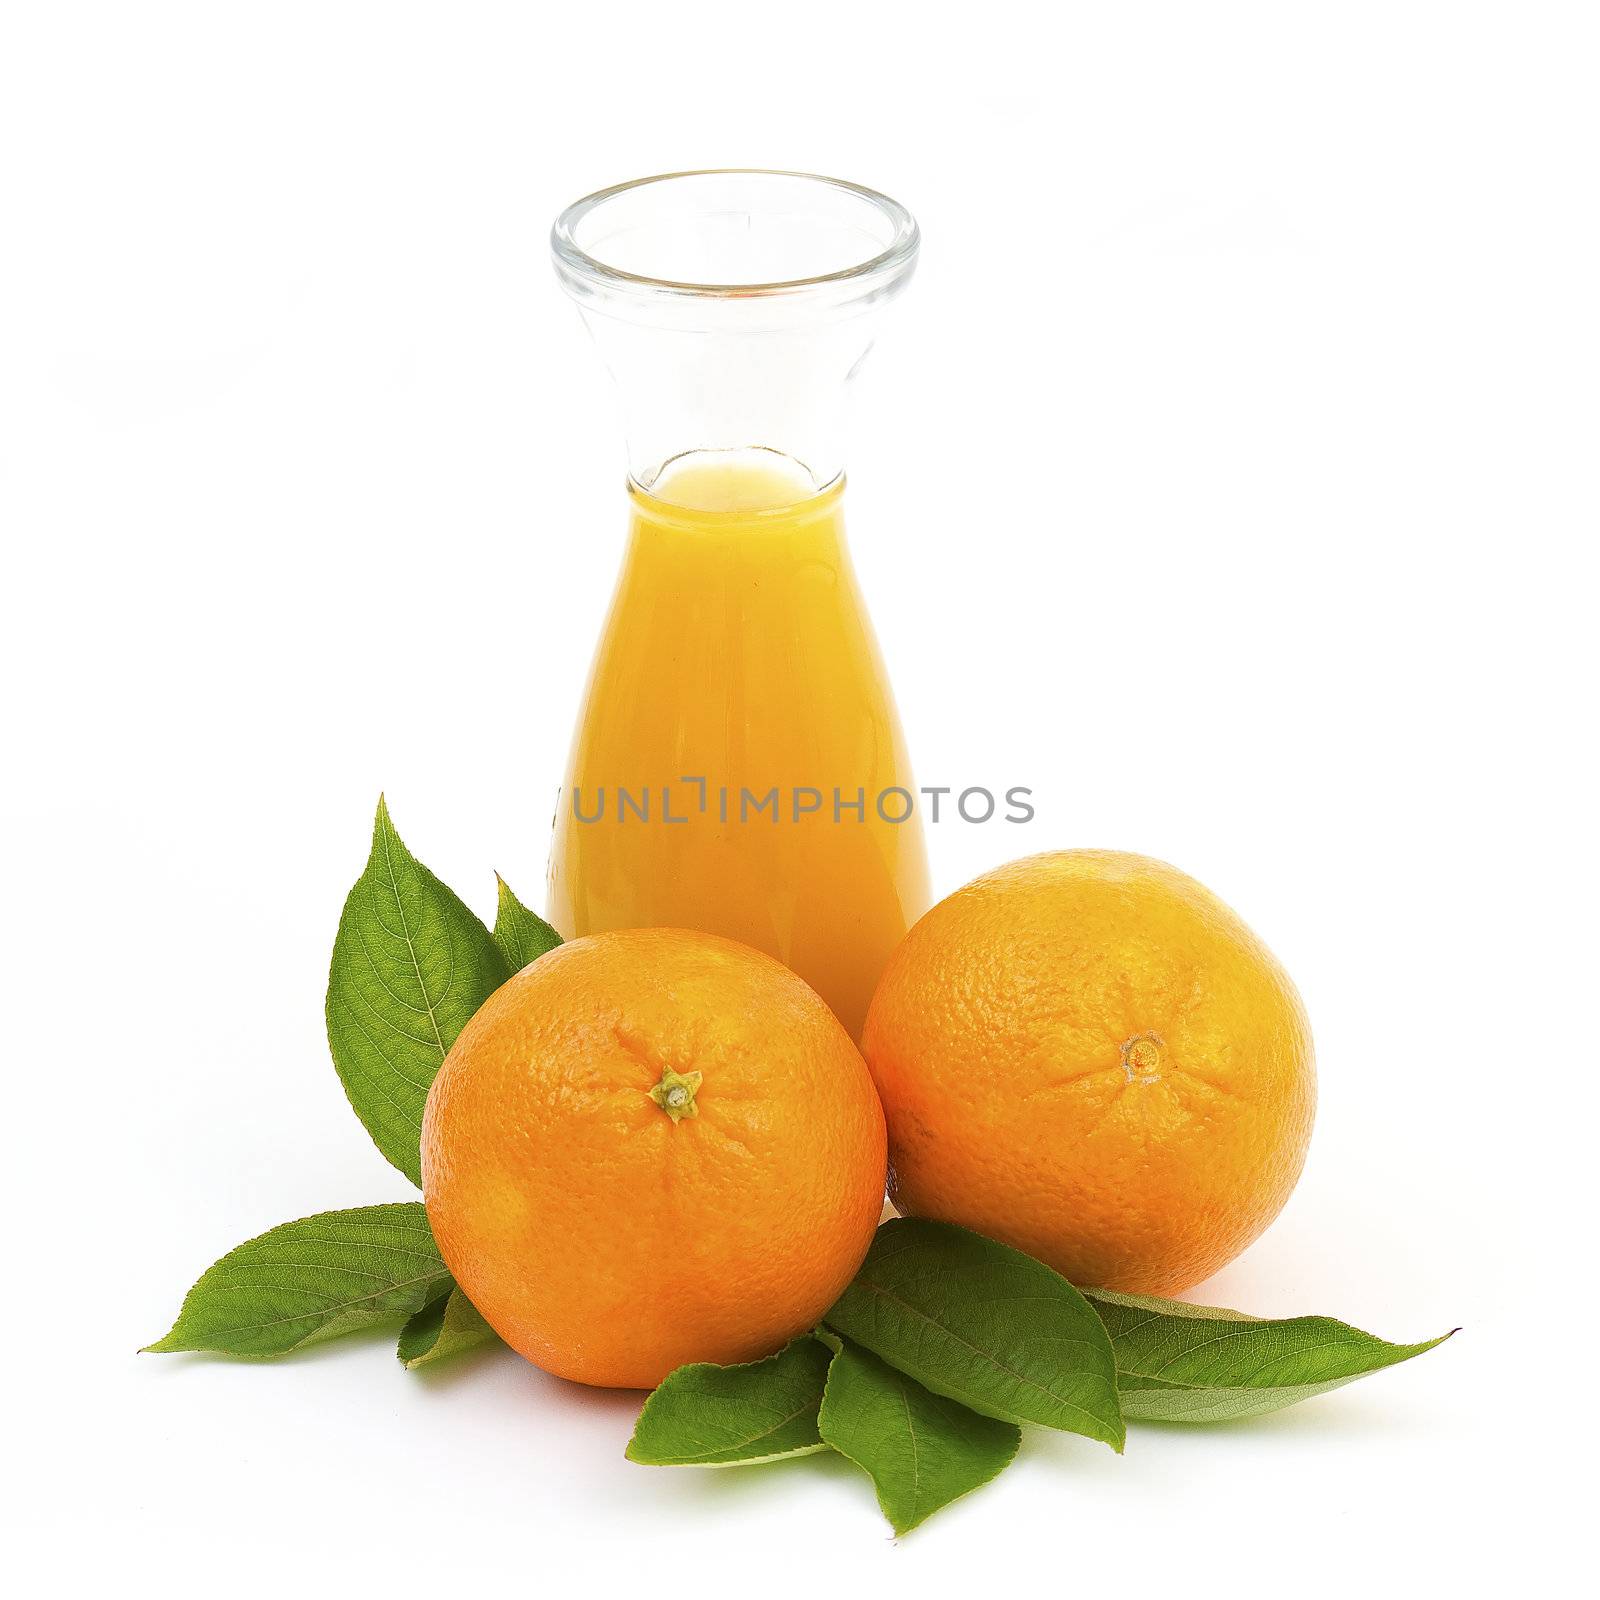 orange juice and some fresh fruits by miradrozdowski